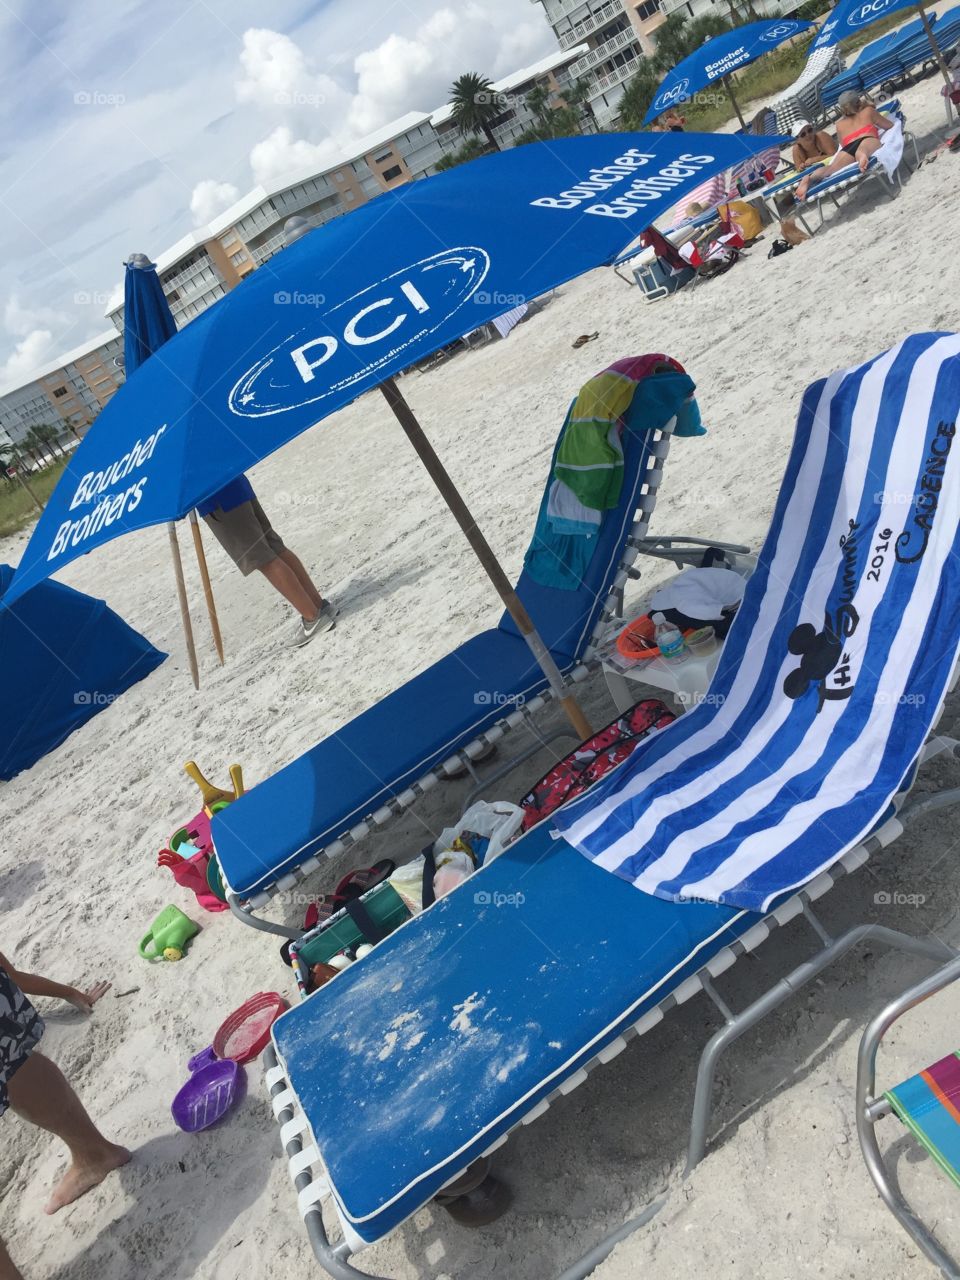 Beach chairs

